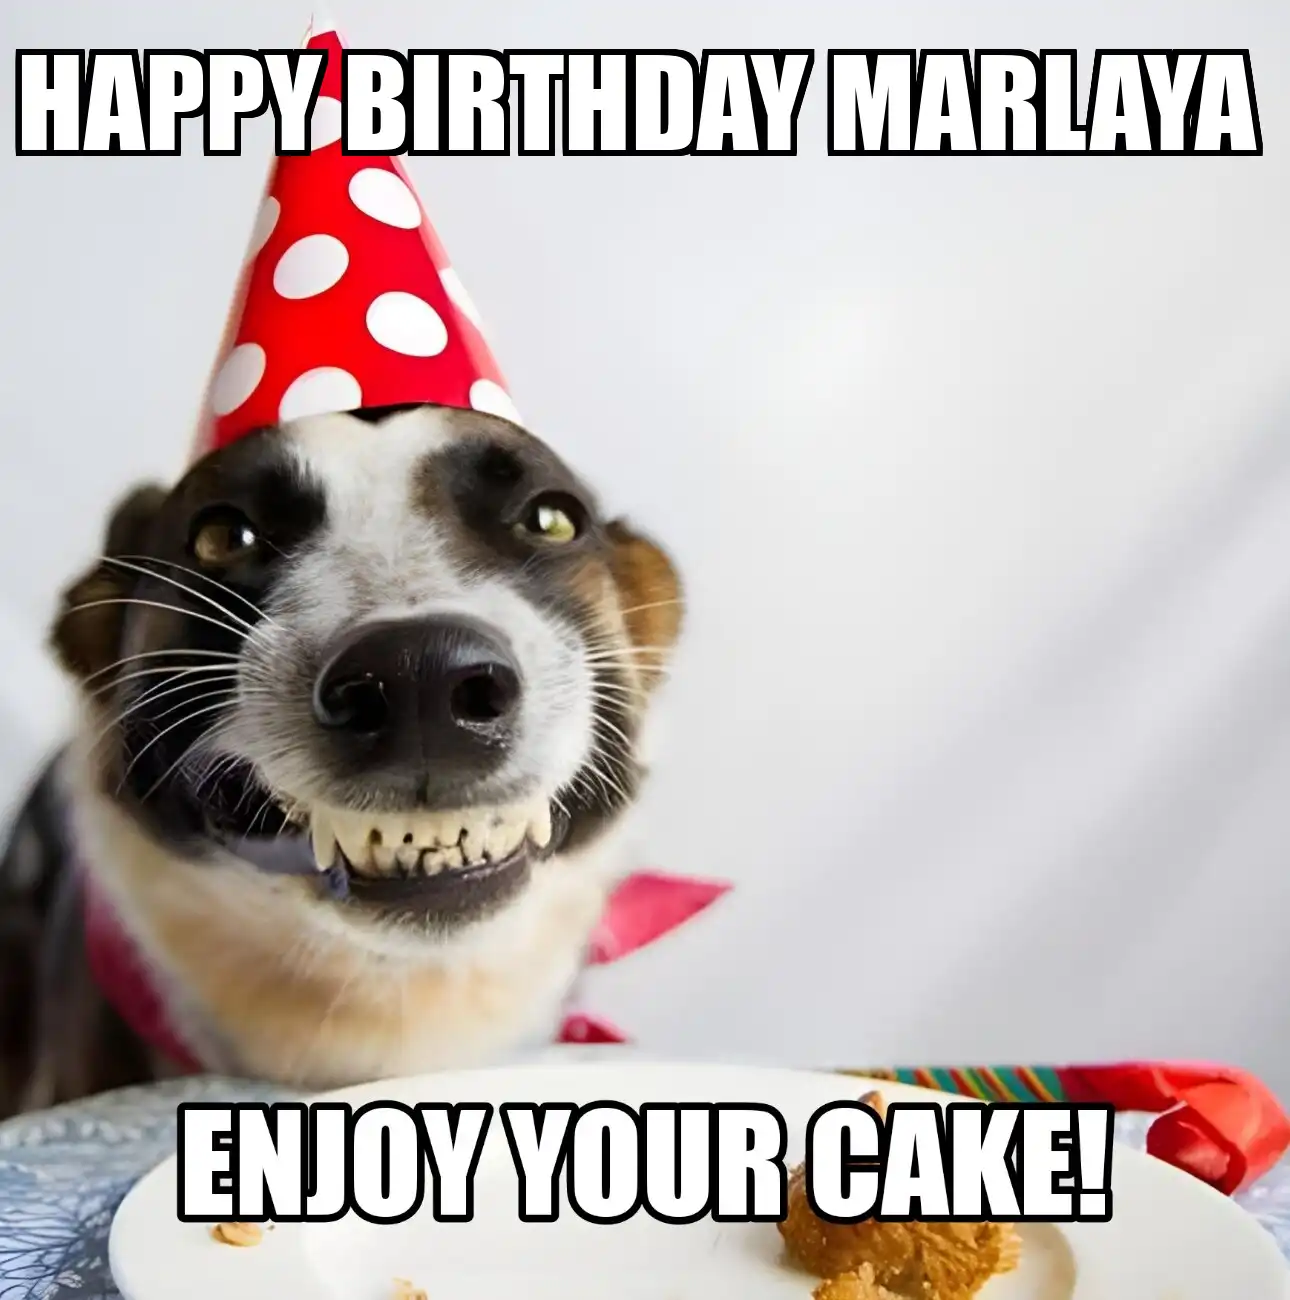 Happy Birthday Marlaya Enjoy Your Cake Dog Meme